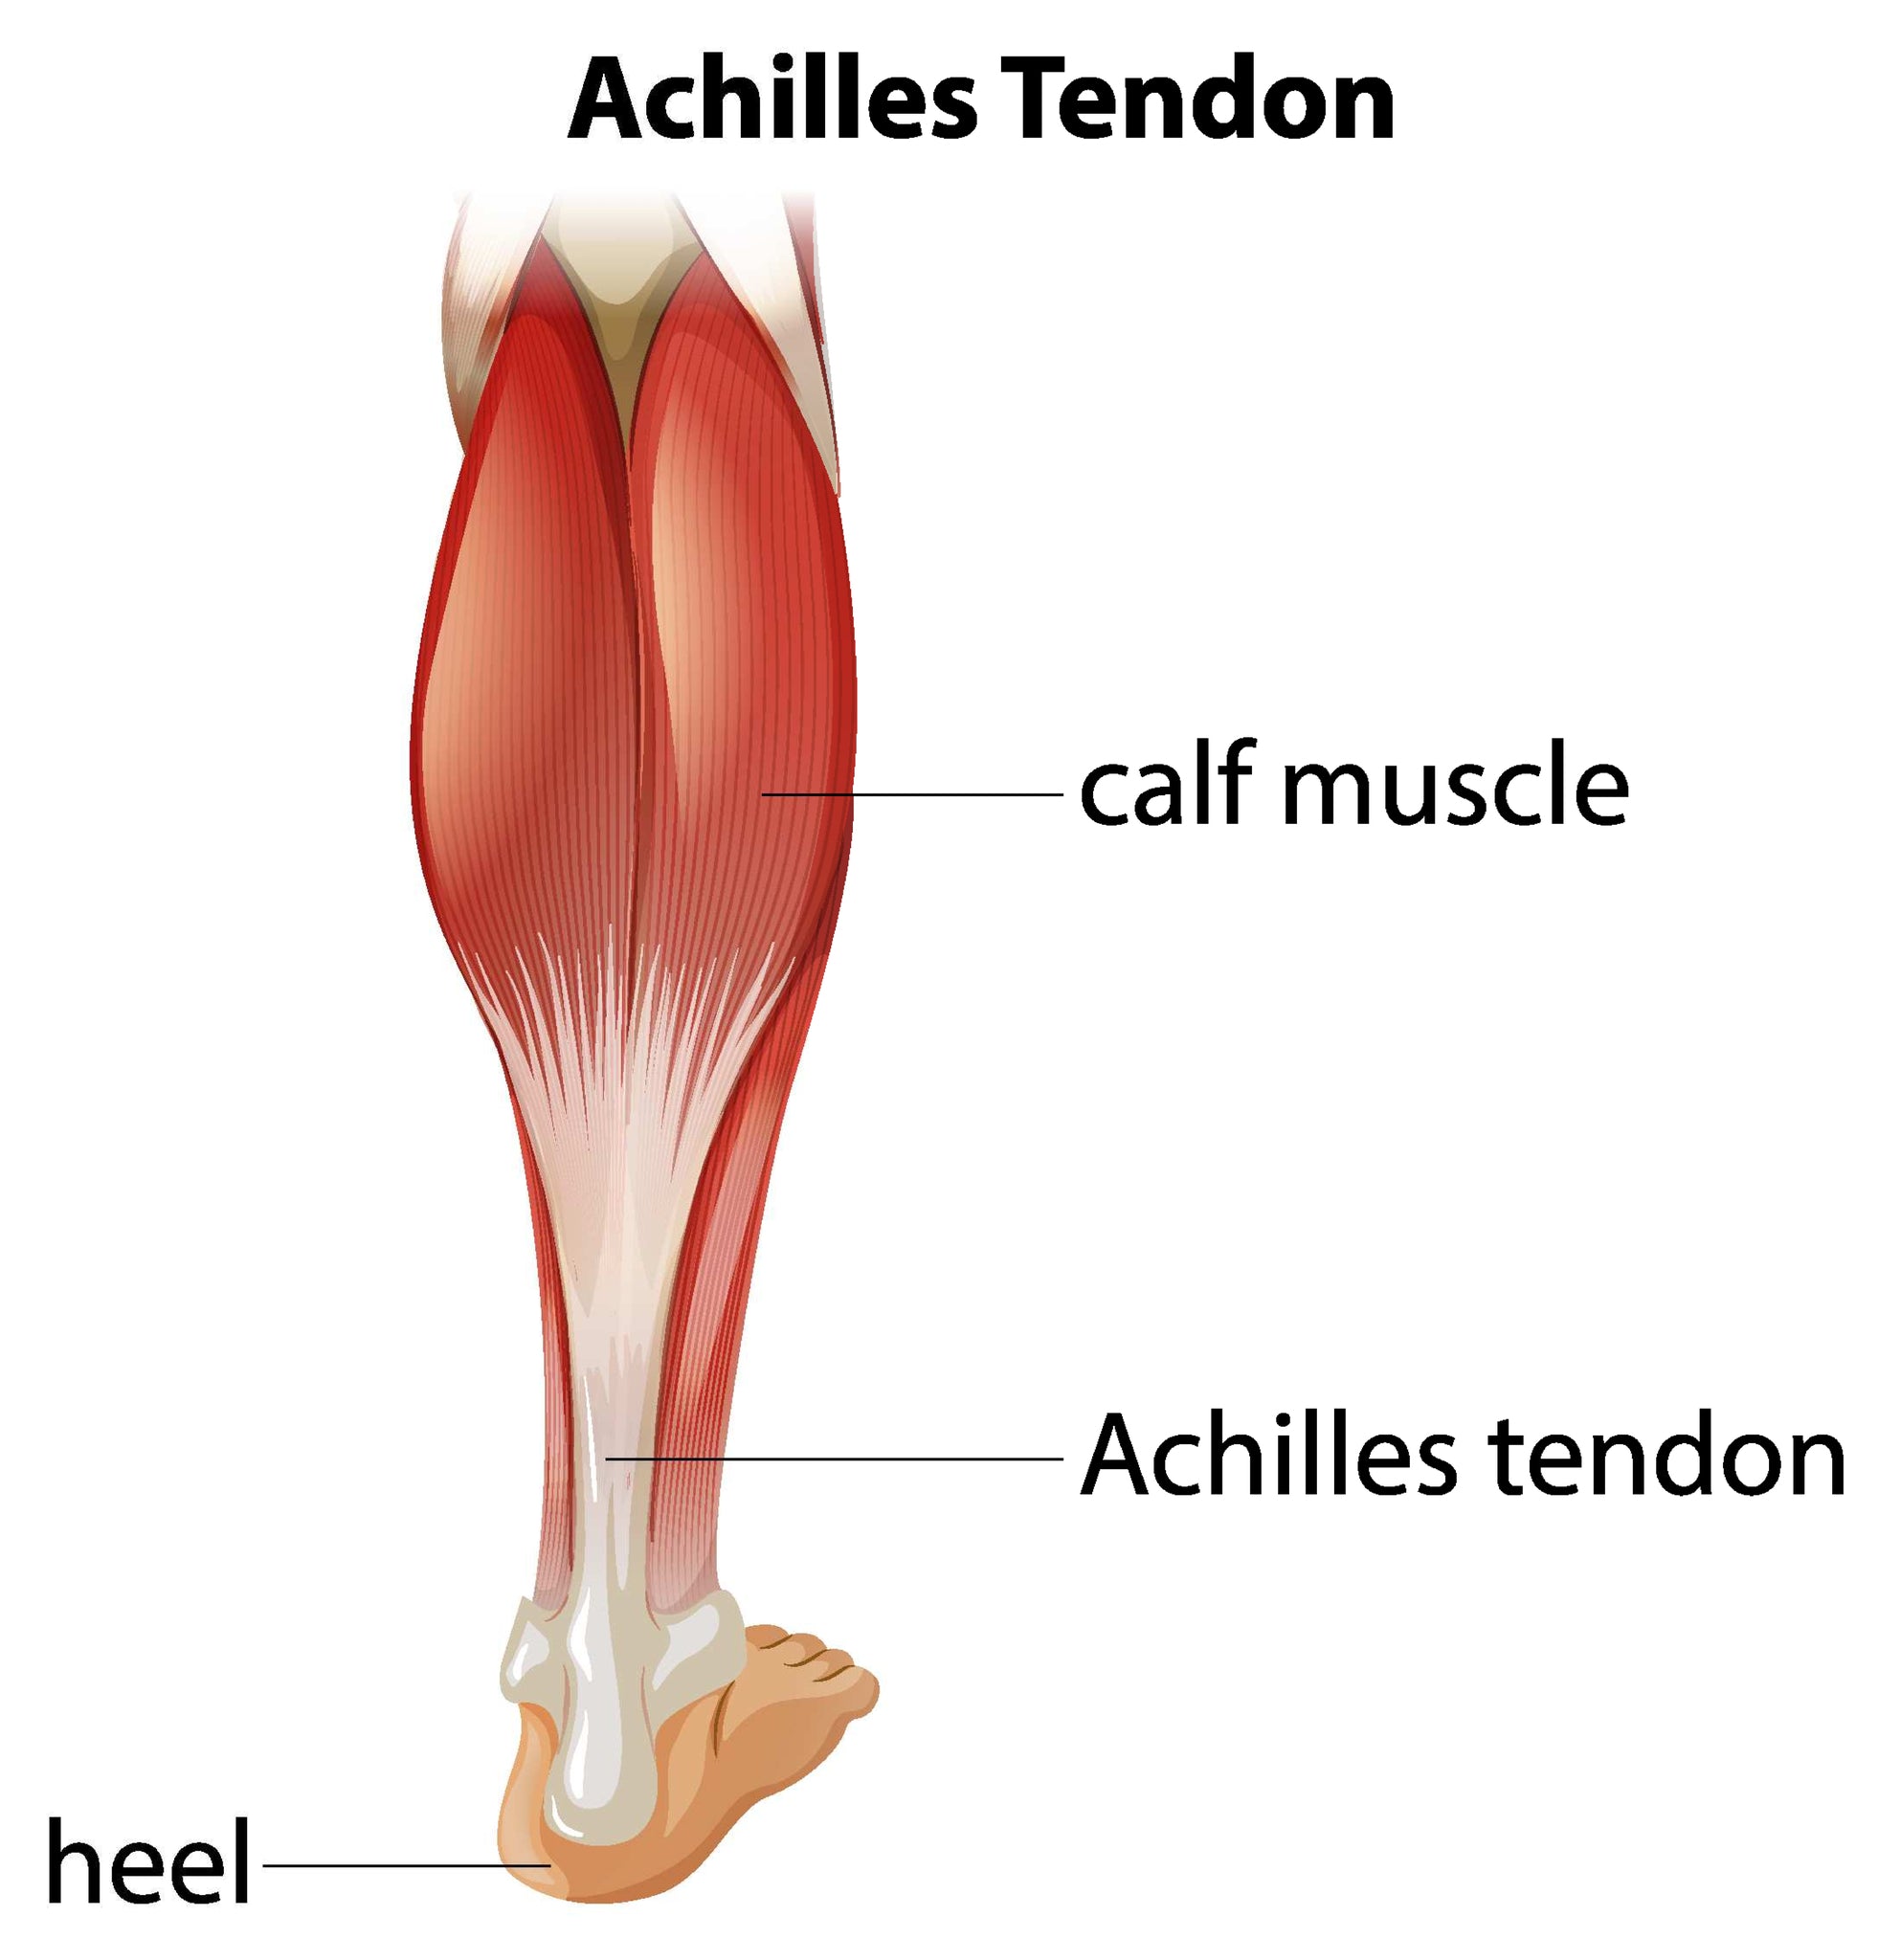 Achilles tendon anatomy